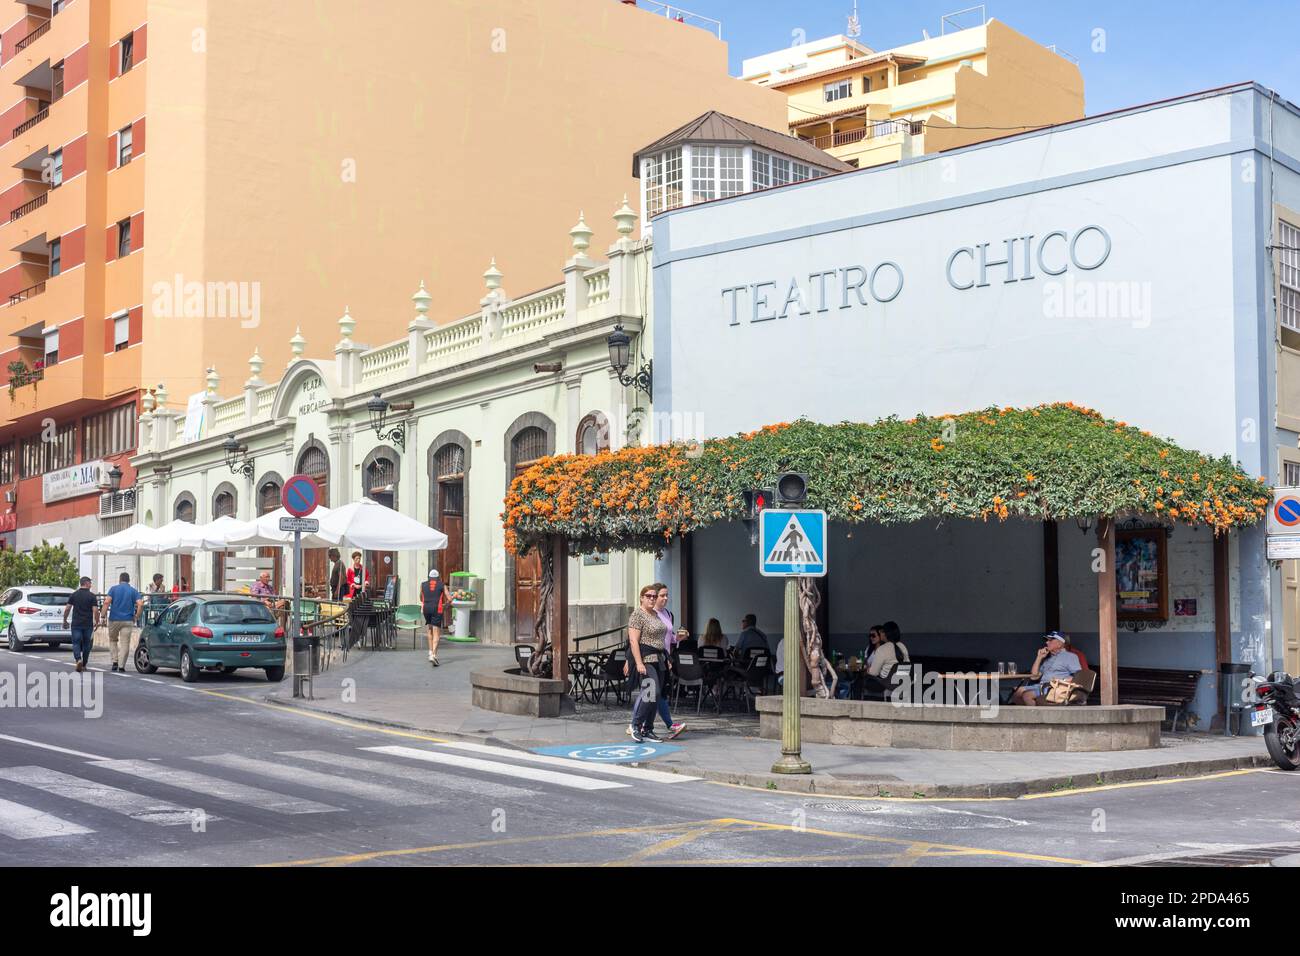 Teatro Chico und Plaza de Mercado, Avenue el Puente, Santa Cruz de La Palma, La Palma, Kanarische Inseln, Königreich Spanien Stockfoto